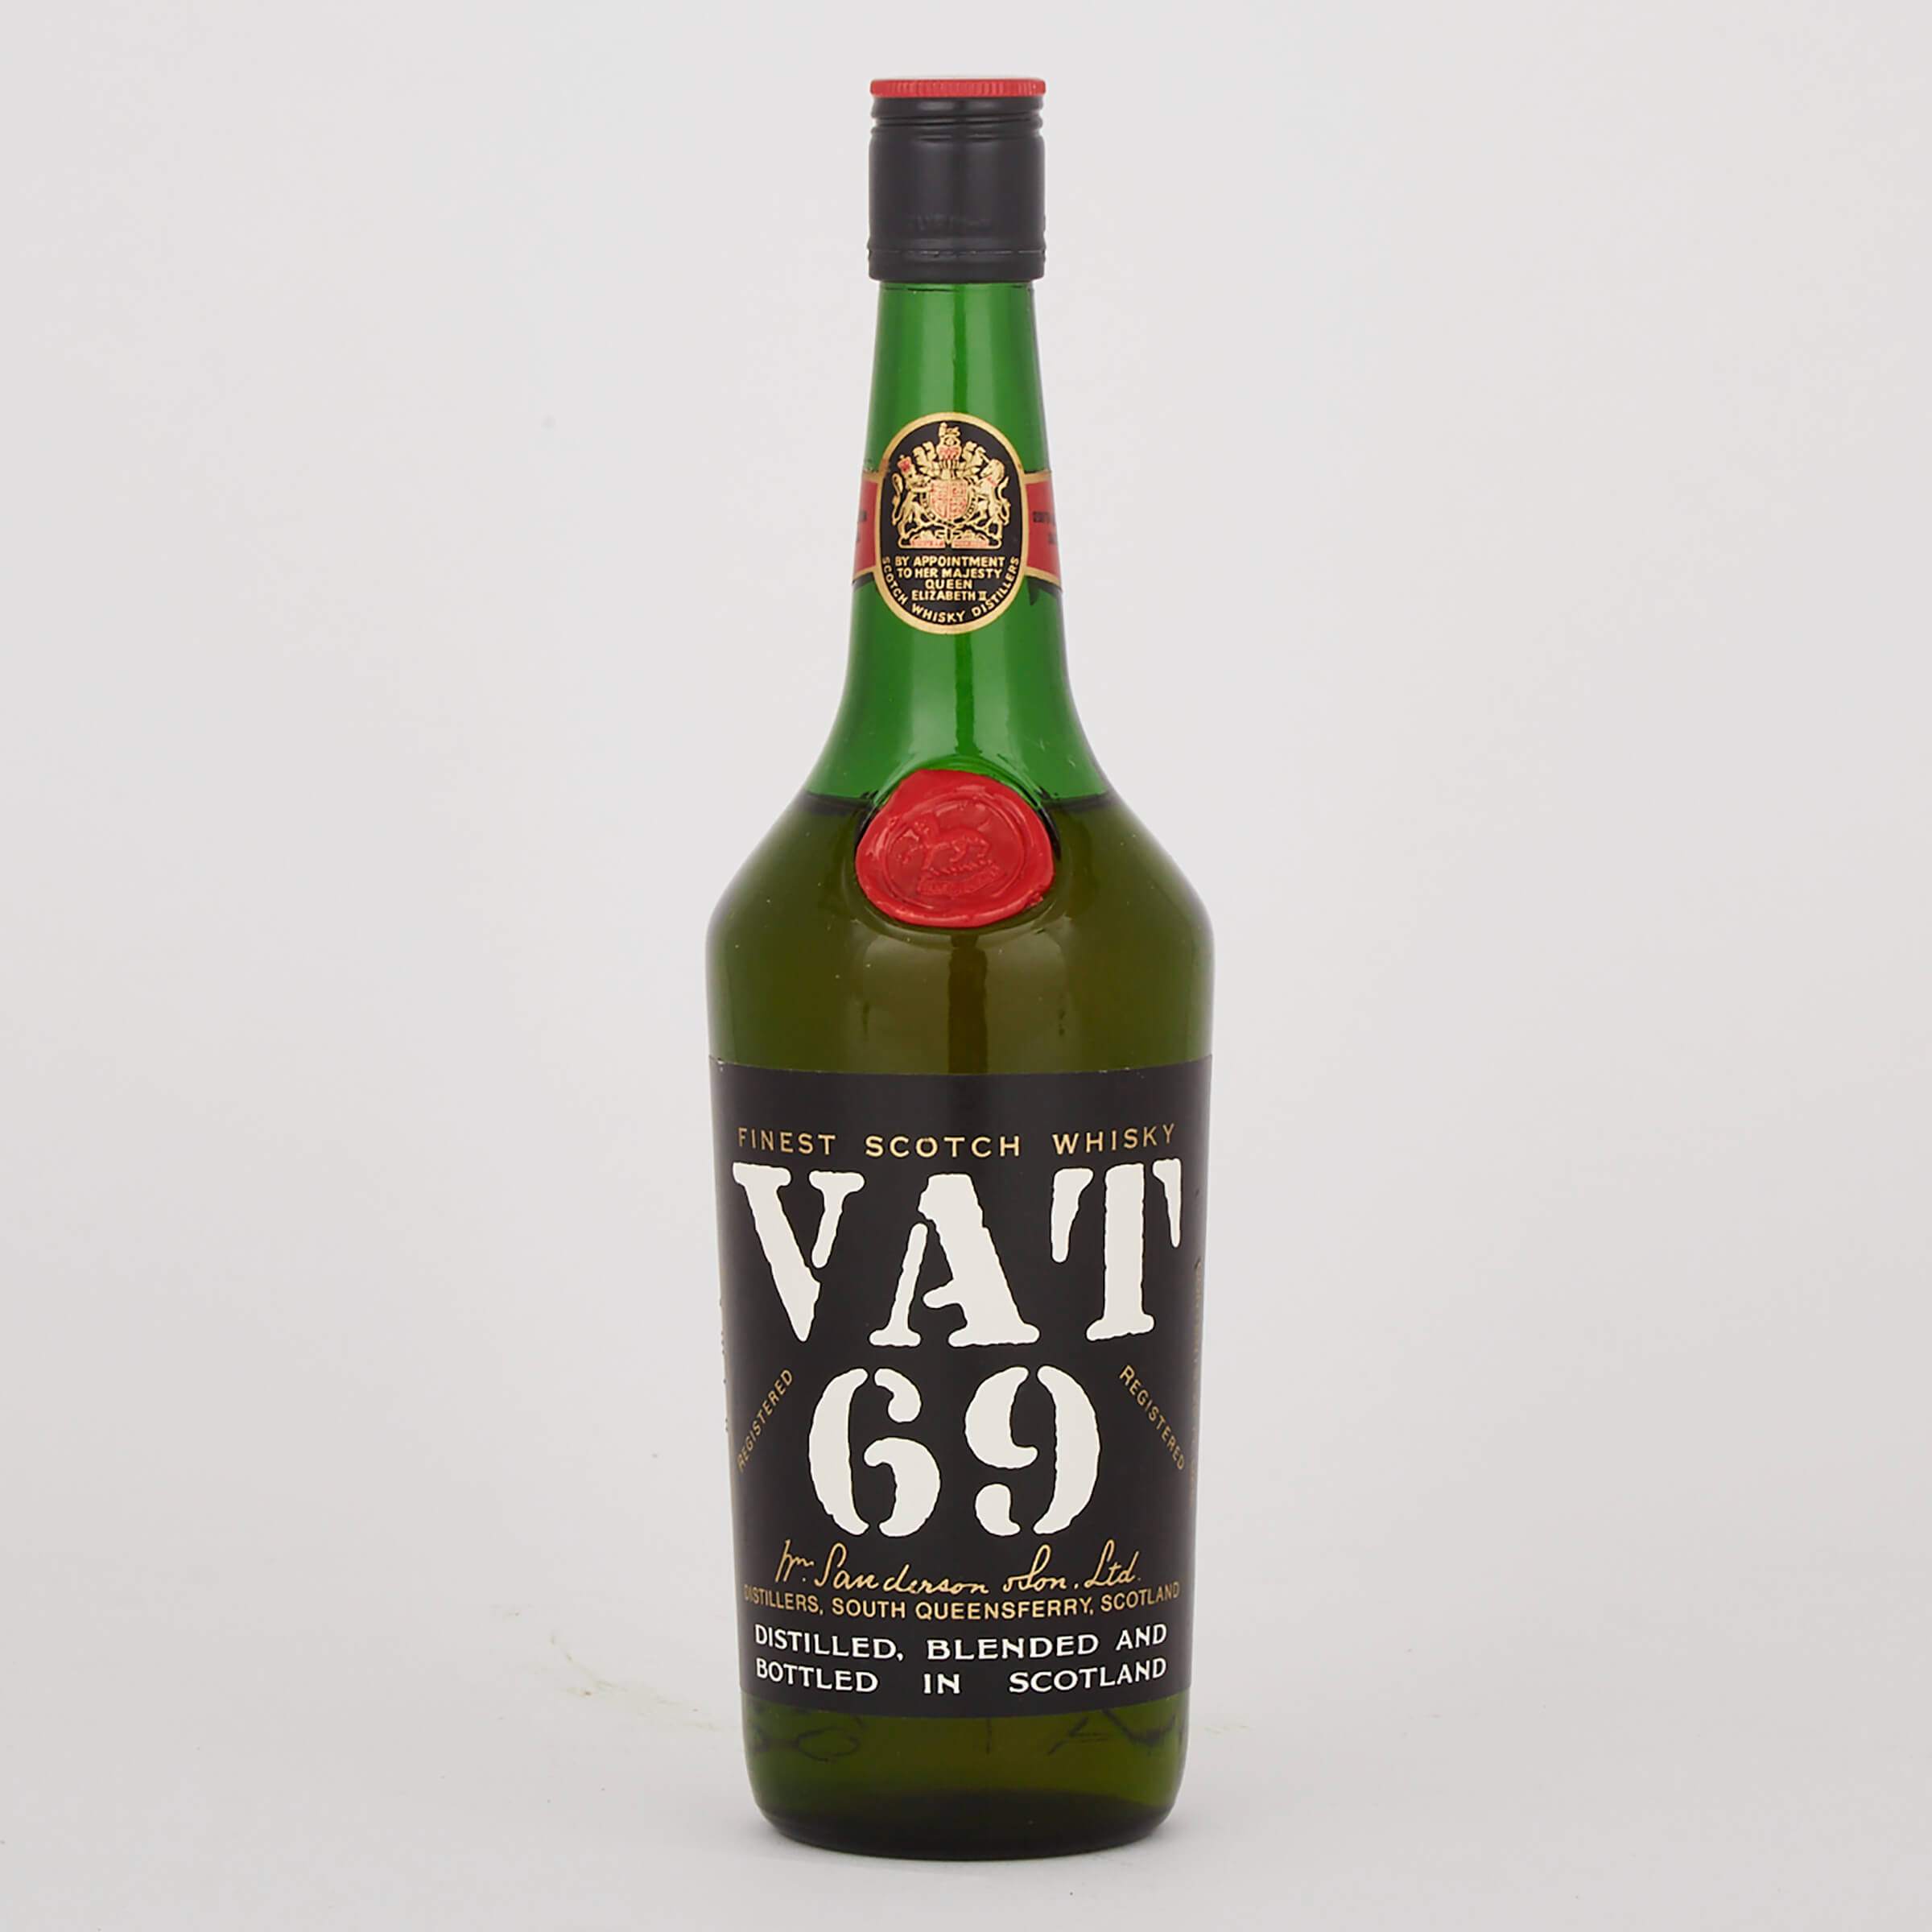 VAT 69 FINEST SCOTCH WHISKY (ONE 25 FL OZ)